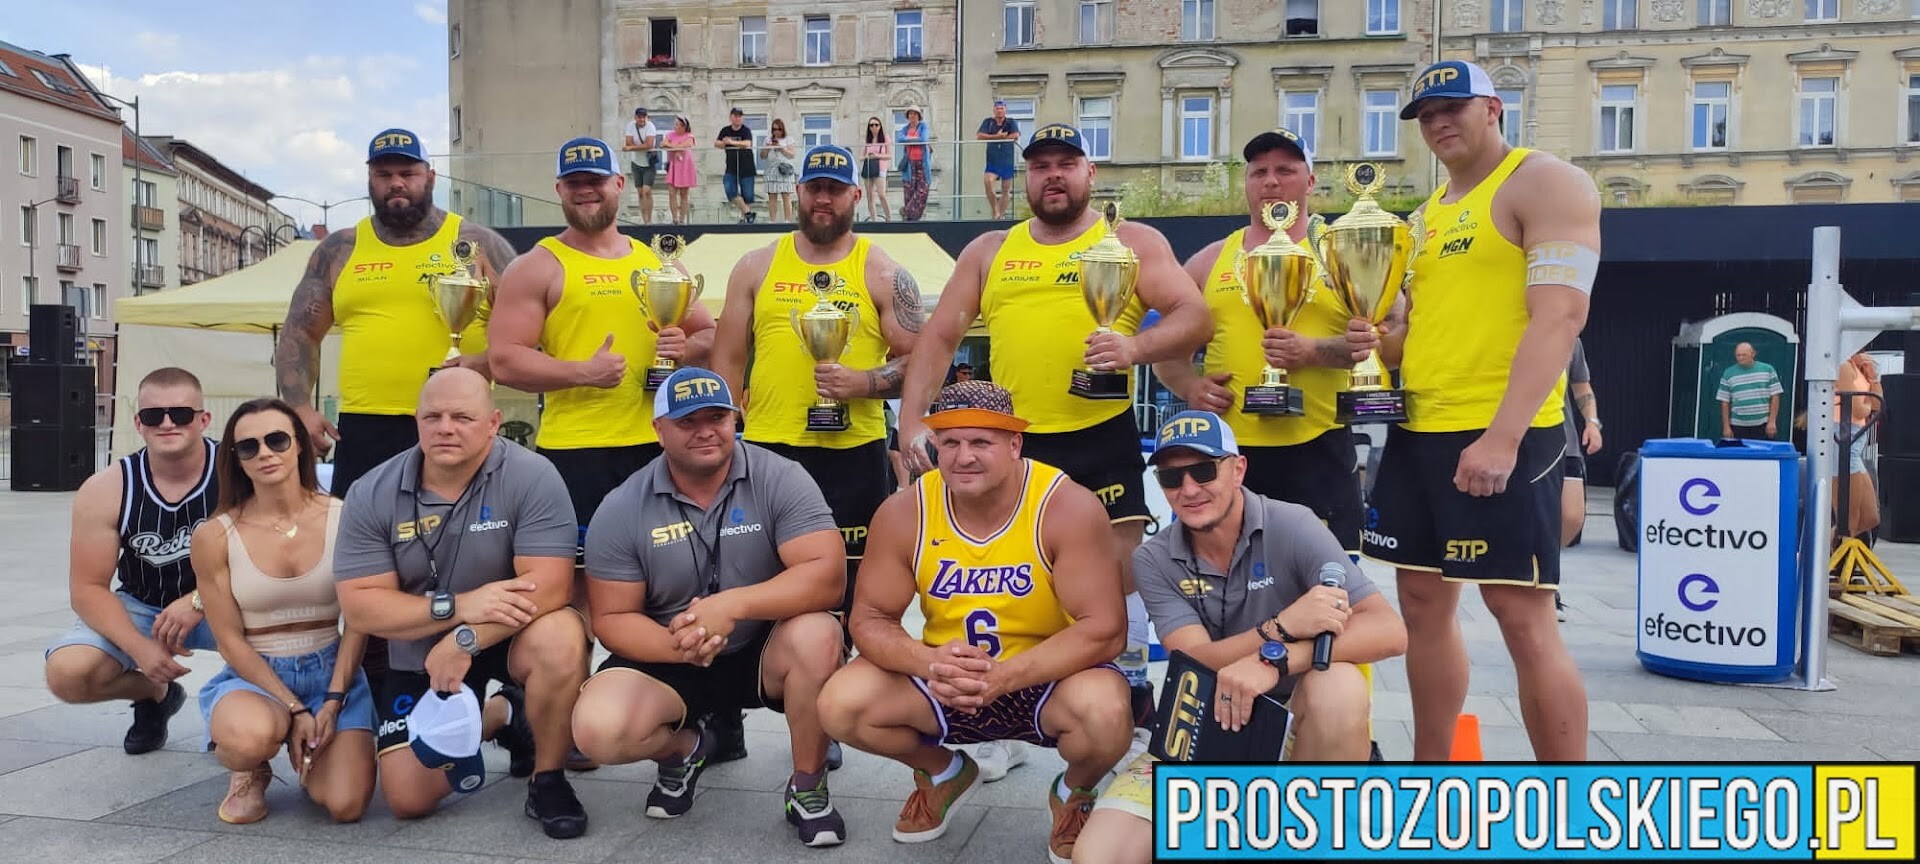 Sześciu gladiatorów, rywalizowało w Opolu podczas Międzynarodowych Mistrzostw Polski Strongman Team.